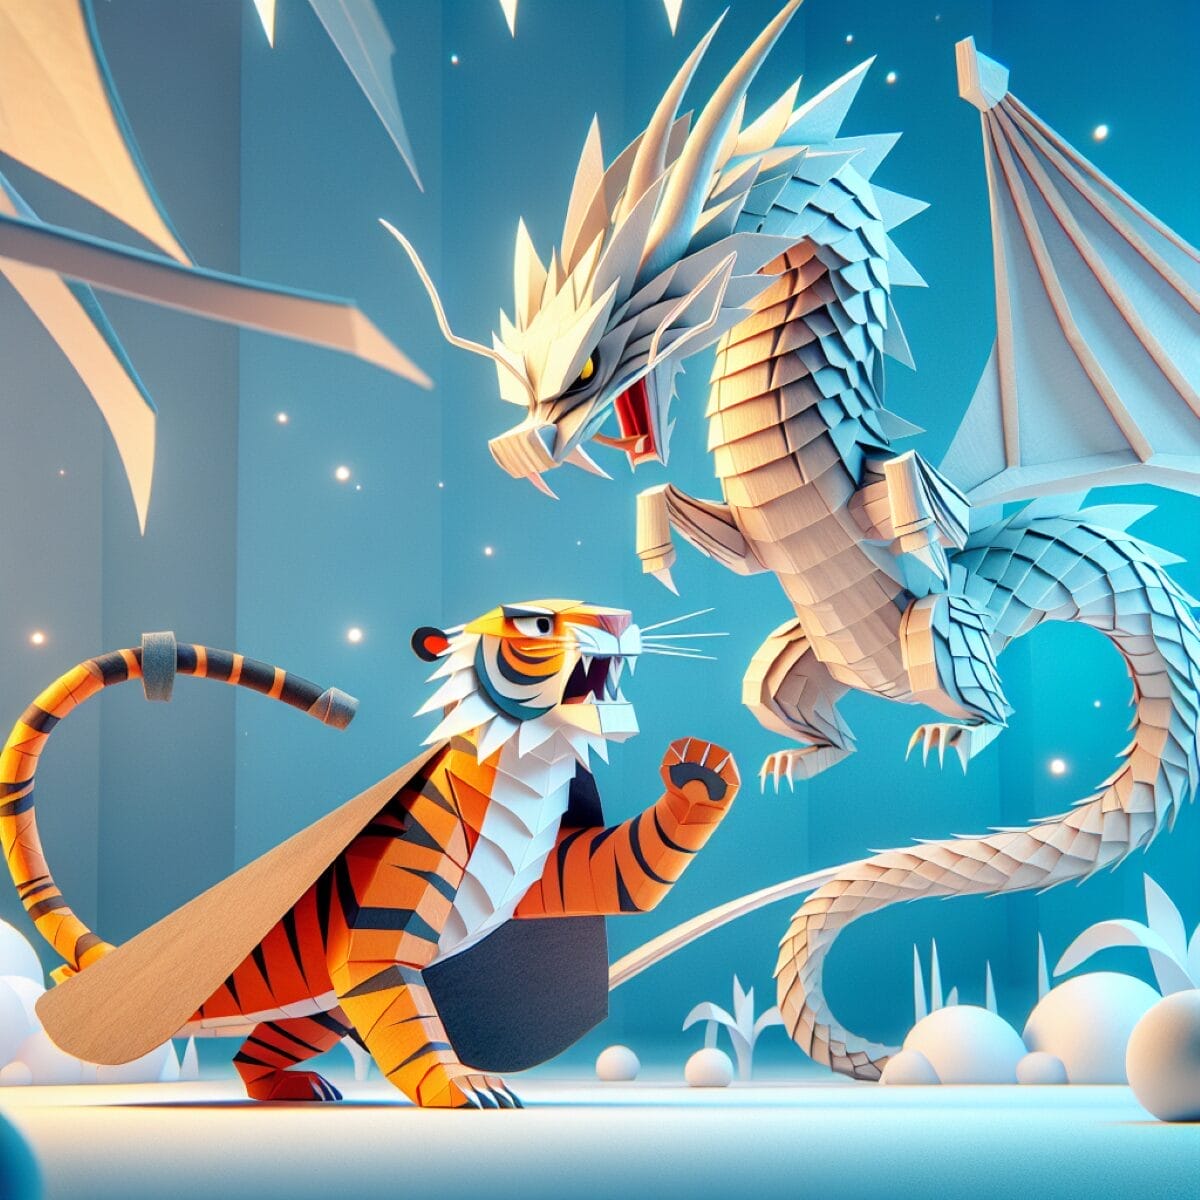 El tigre de papel amenaza al dragon. Desmantelando la campaña anti-China de Occidente